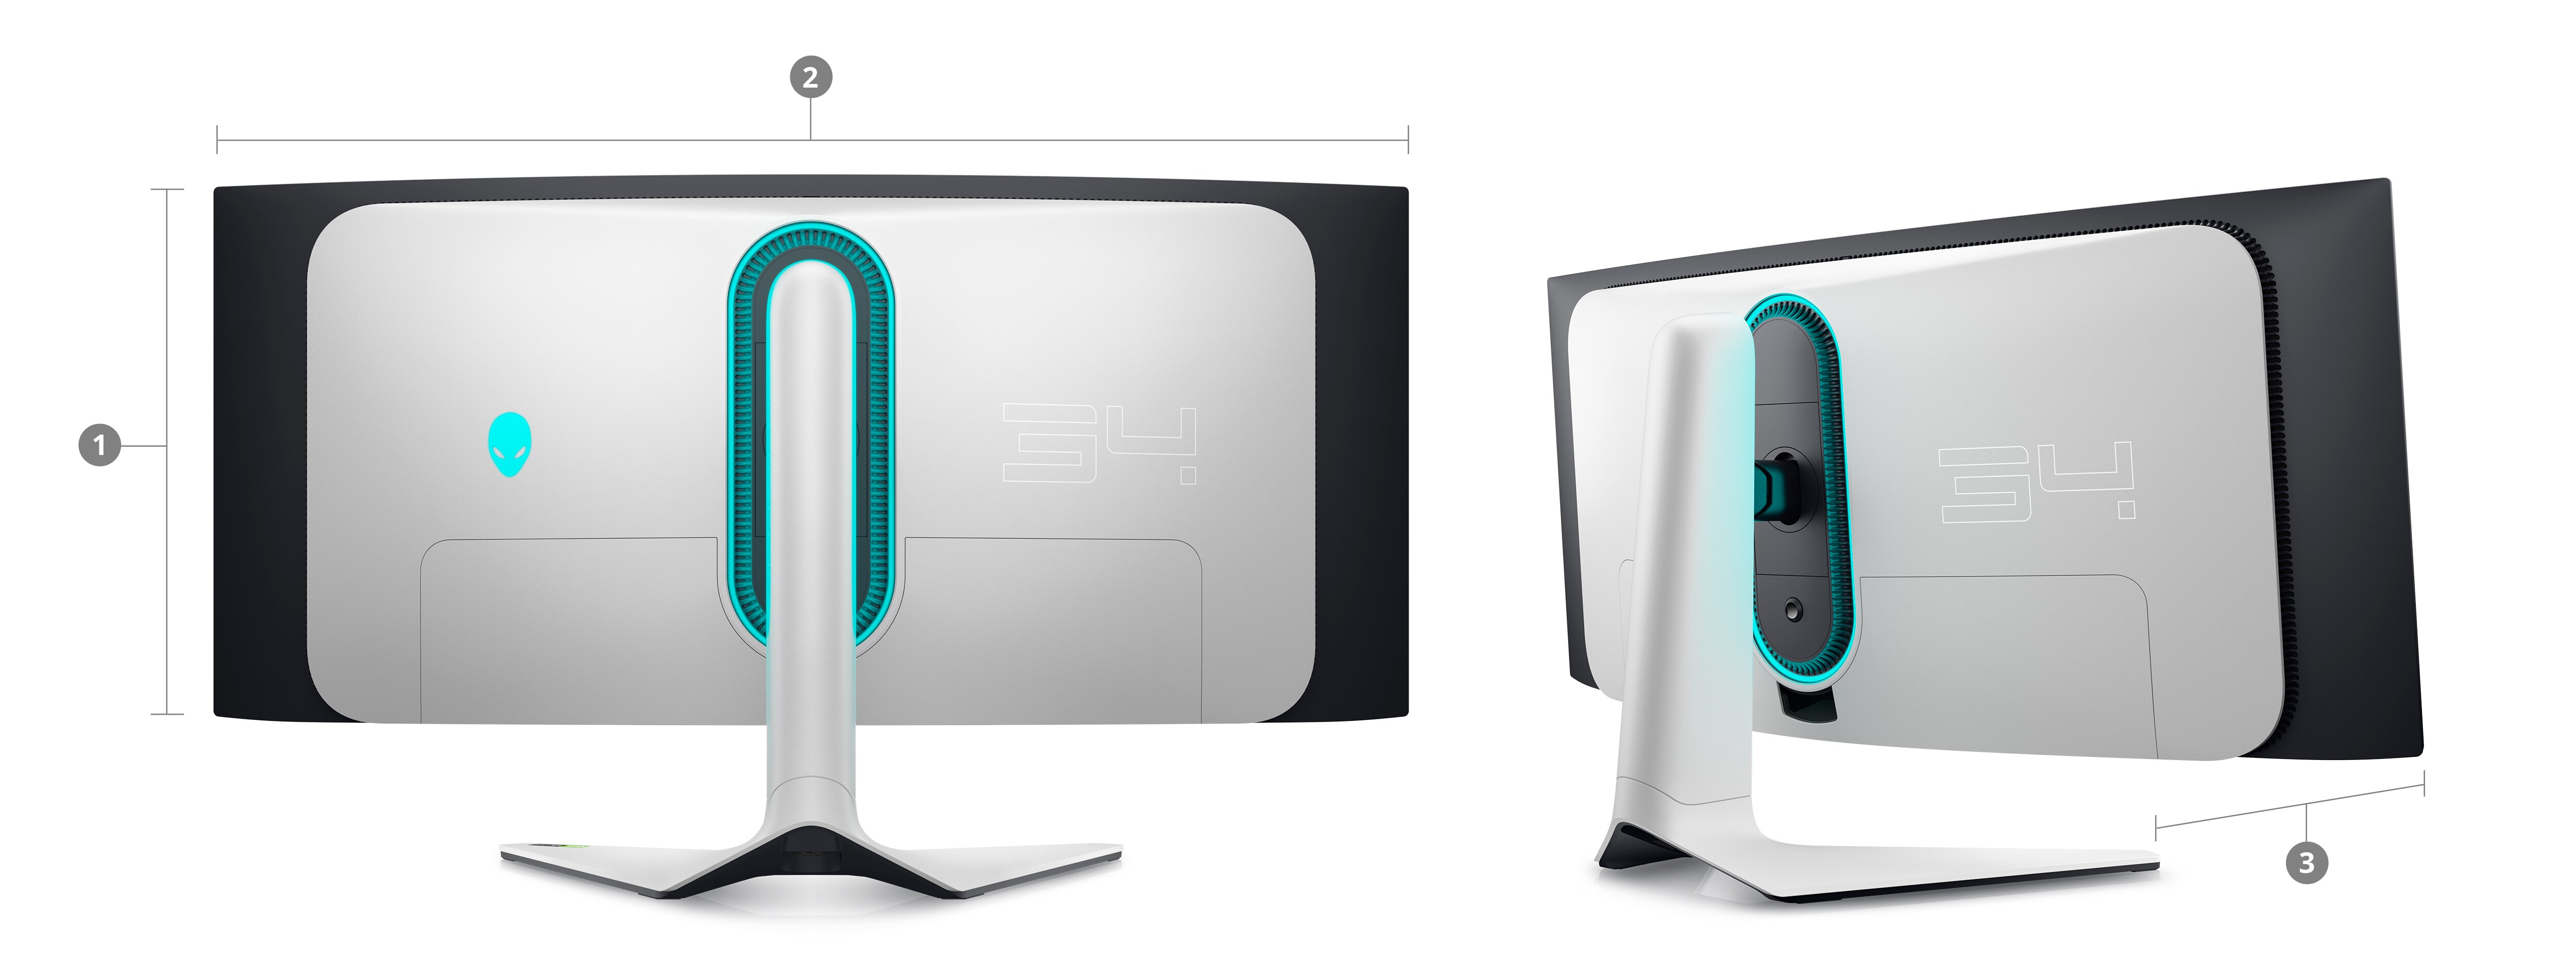 Alienware présente deux nouveaux écrans gaming QD-OLED prometteurs